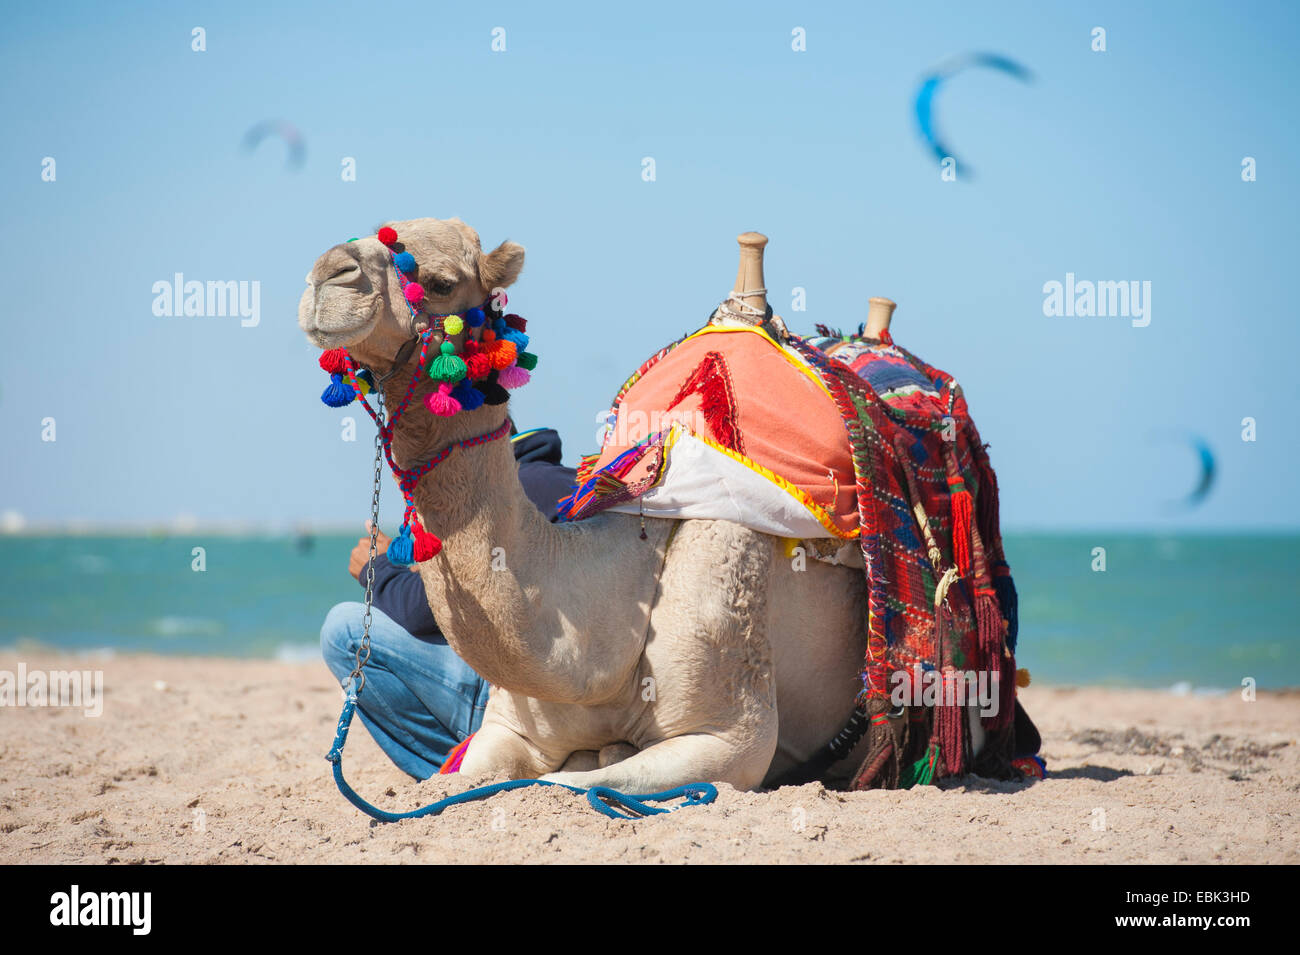 Dromadaire égyptien sur la plage en été avec kite surfeurs en arrière-plan Banque D'Images